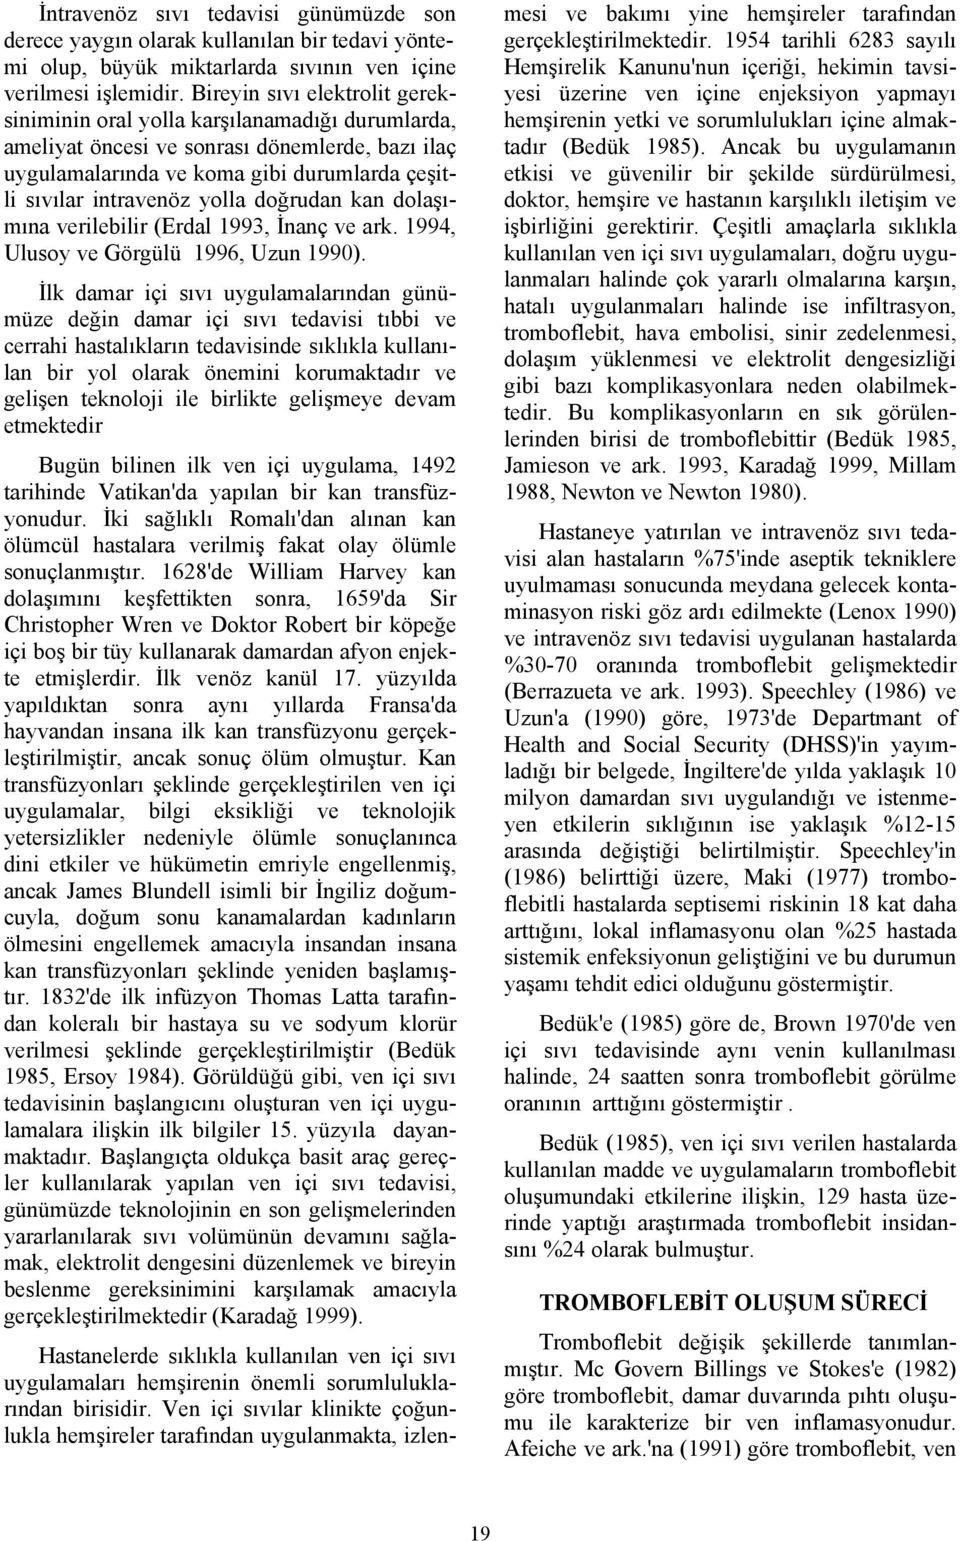 doğrudan kan dolaşımına verilebilir (Erdal 1993, İnanç ve ark. 1994, Ulusoy ve Görgülü 1996, Uzun 1990).